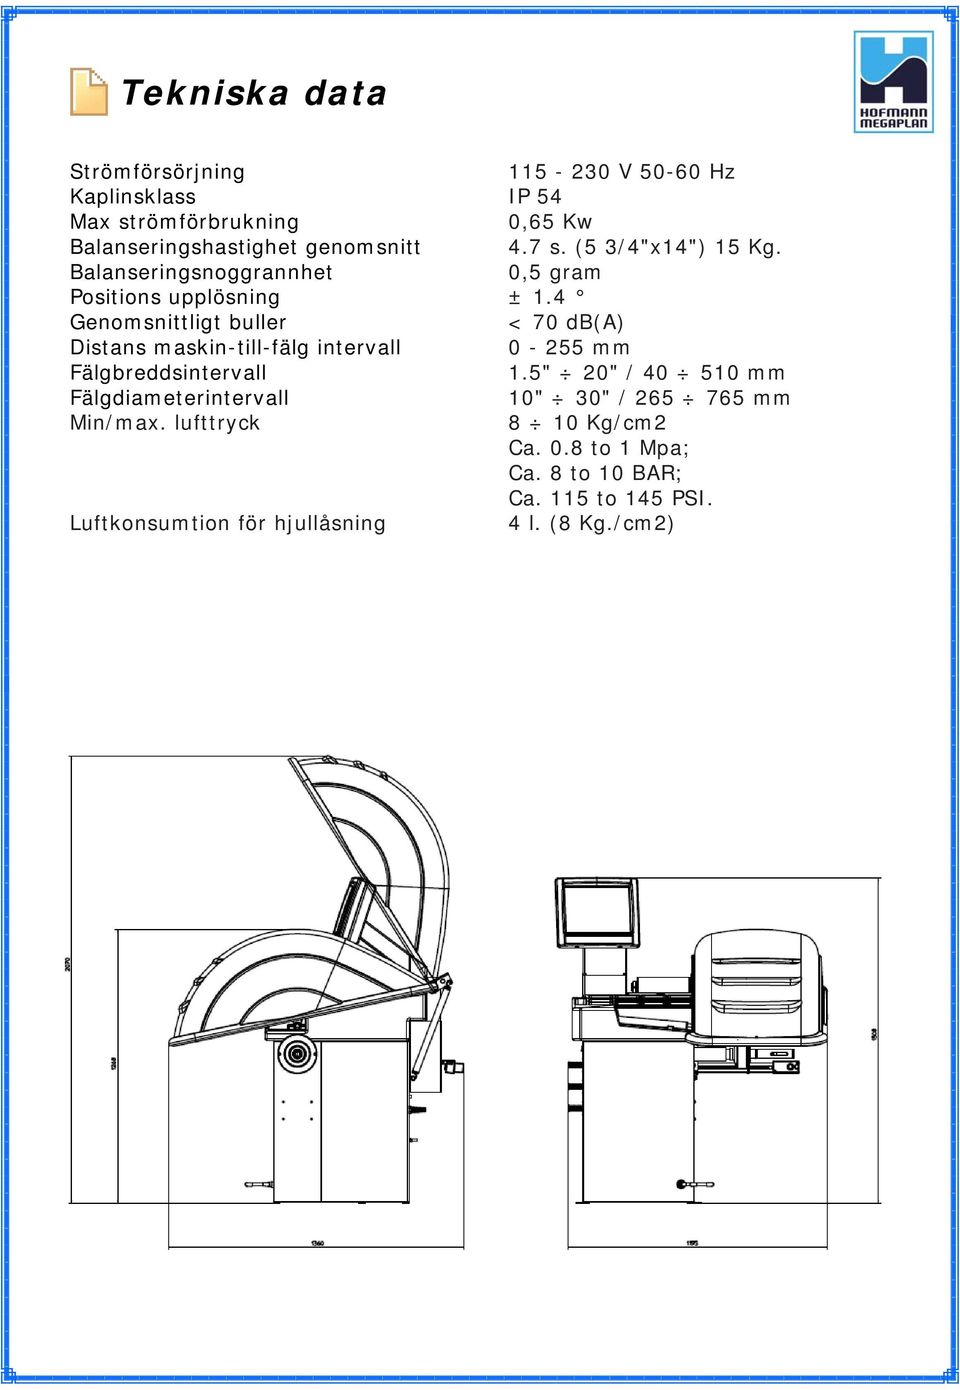 4 Genomsnittligt buller < 70 db(a) Distans maskin-till-fälg intervall 0-255 mm Fälgbreddsintervall 1.